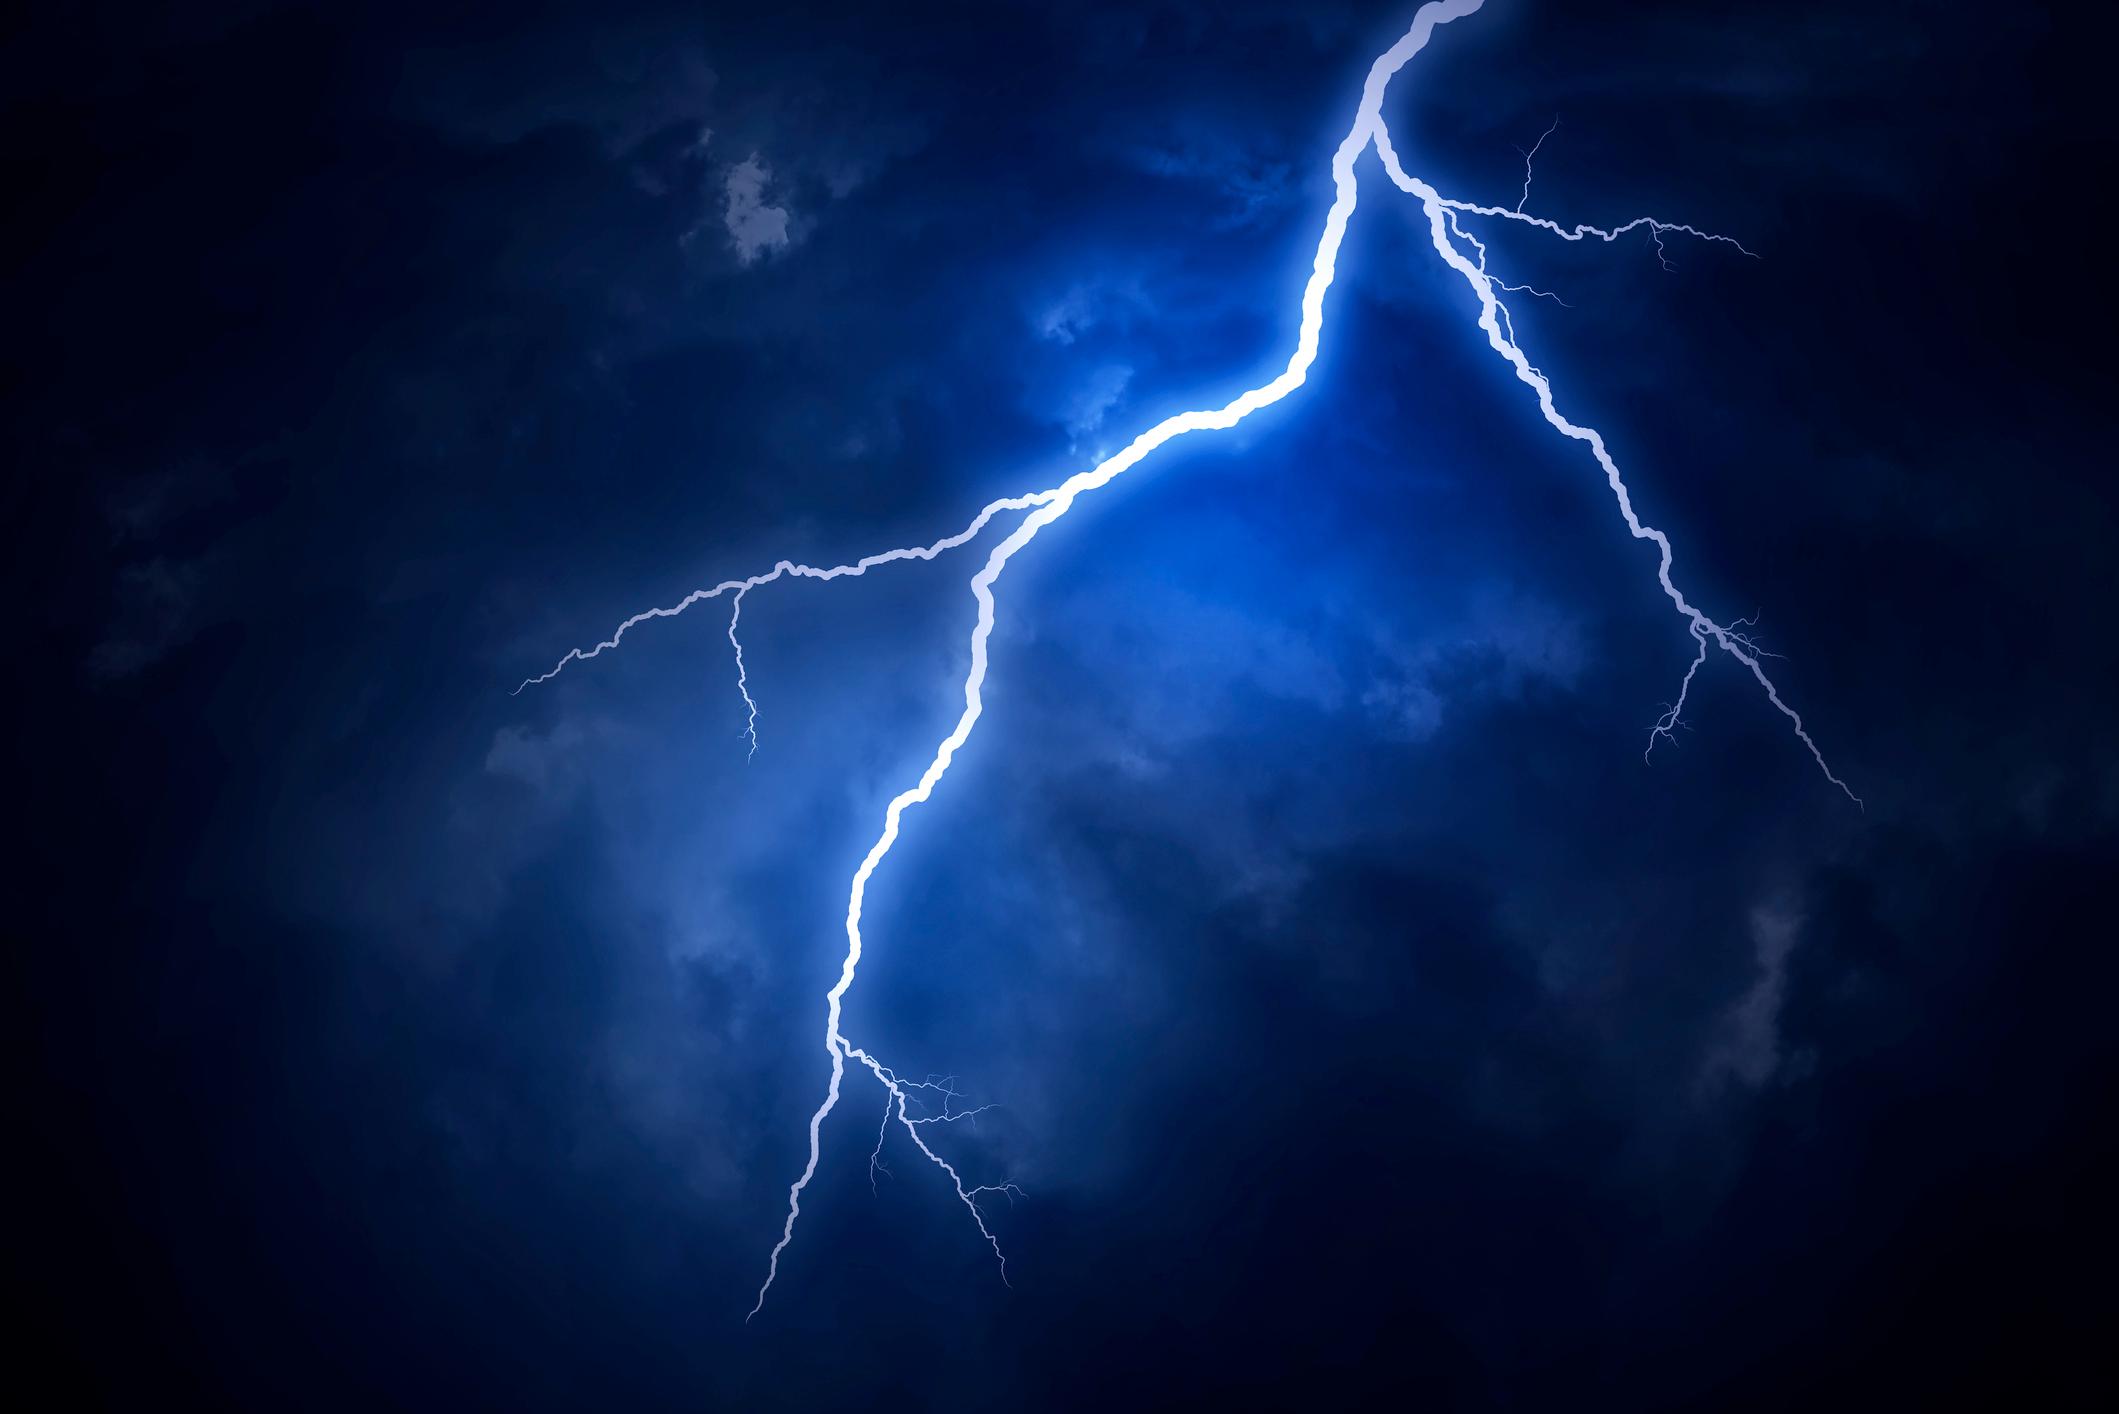  Durch die hohen Temperaturen und Stromstärken geht von Blitzen eine gewaltige Zerstörungskraft aus.